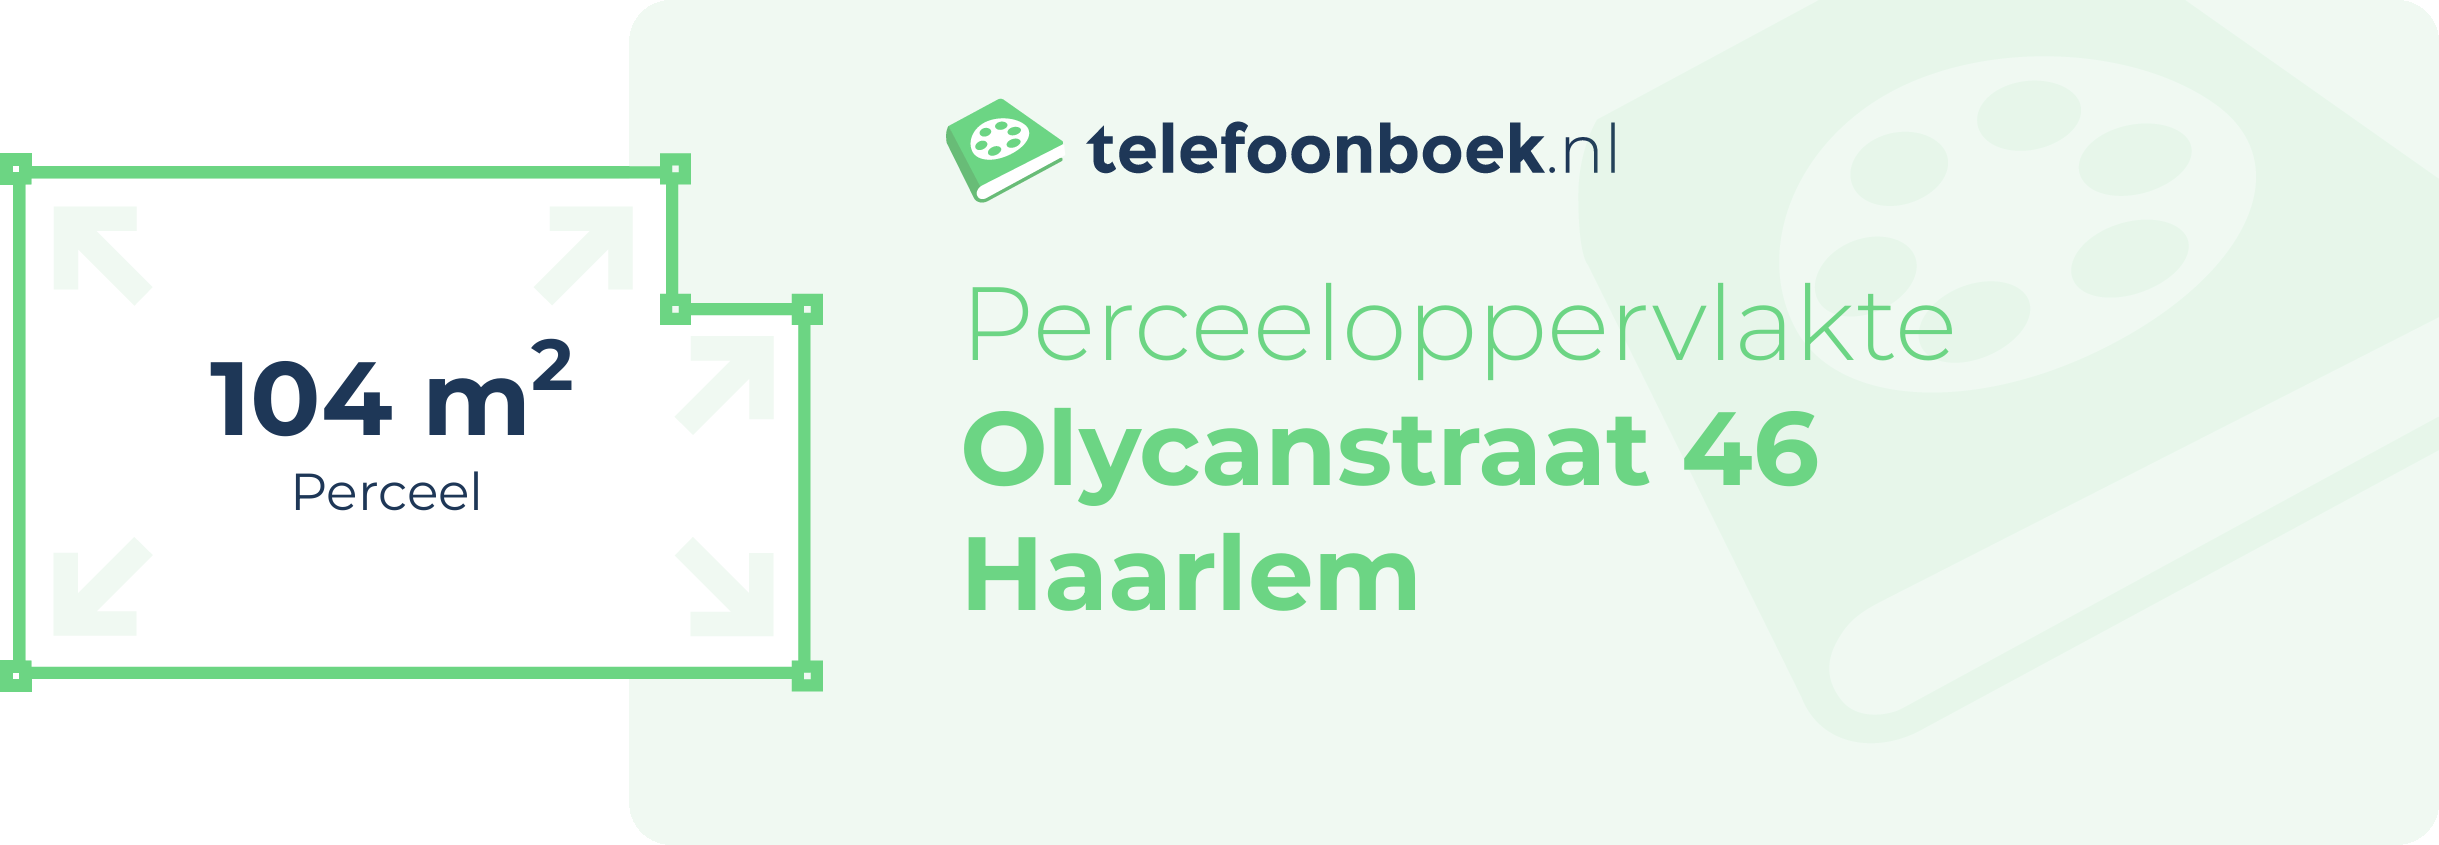 Perceeloppervlakte Olycanstraat 46 Haarlem